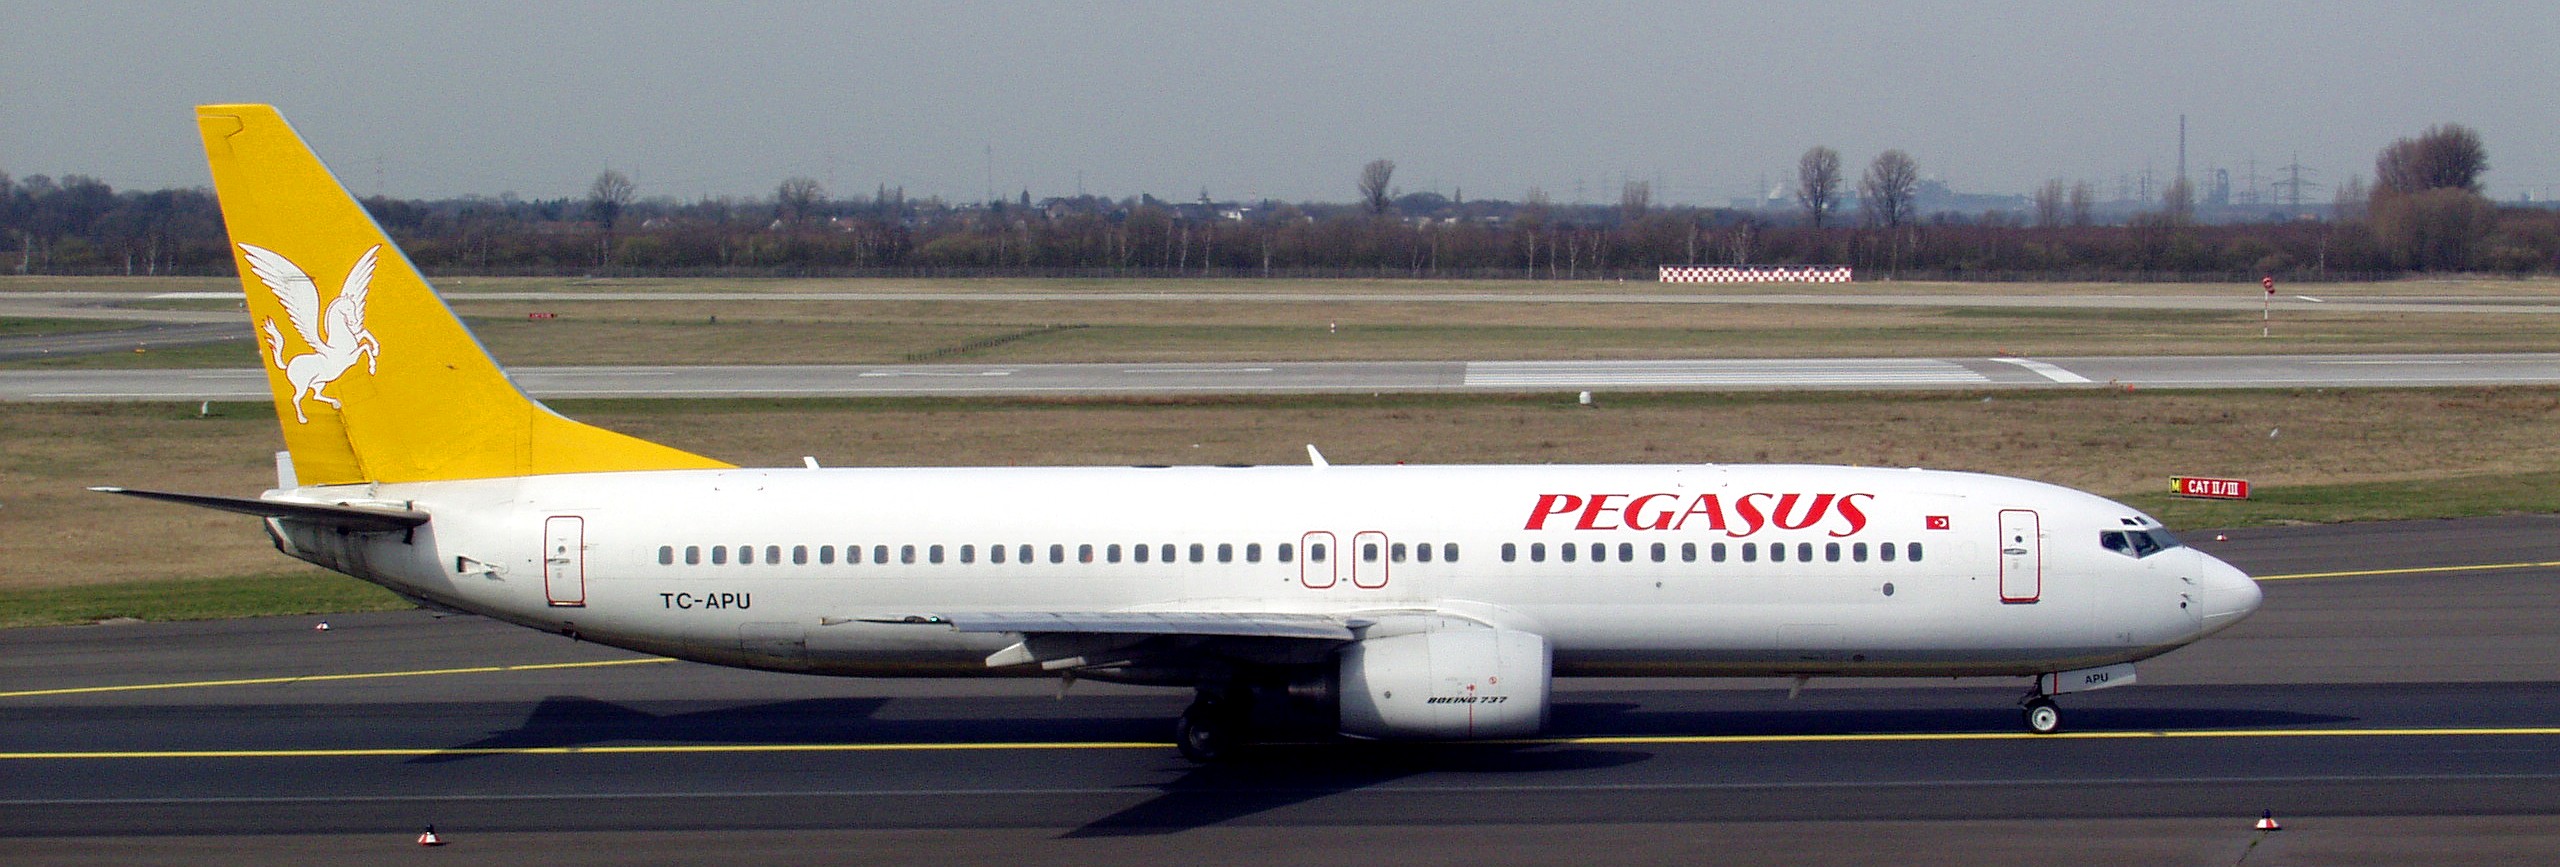 Авиакомпания Пегасус Эйрлайнз (Pegasus Airlines). Официальный сайт.2